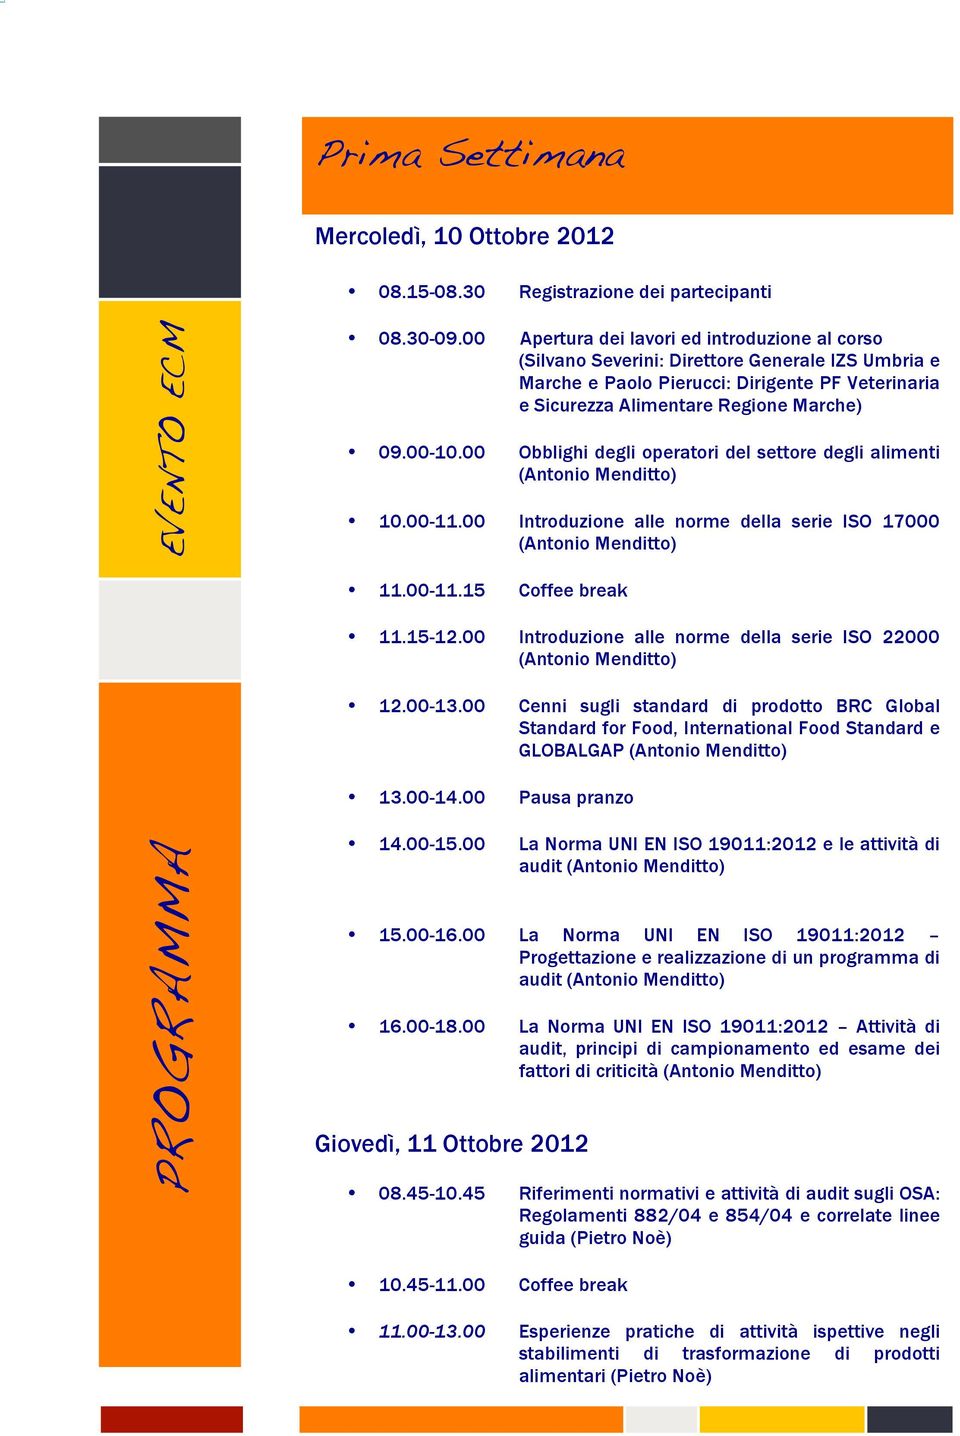 00 Obblighi degli operatori del settore degli alimenti (Antonio Menditto) 10.00-11.00 Introduzione alle norme della serie ISO 17000 (Antonio Menditto) 11.00-11.15 Coffee break 11.15-12.